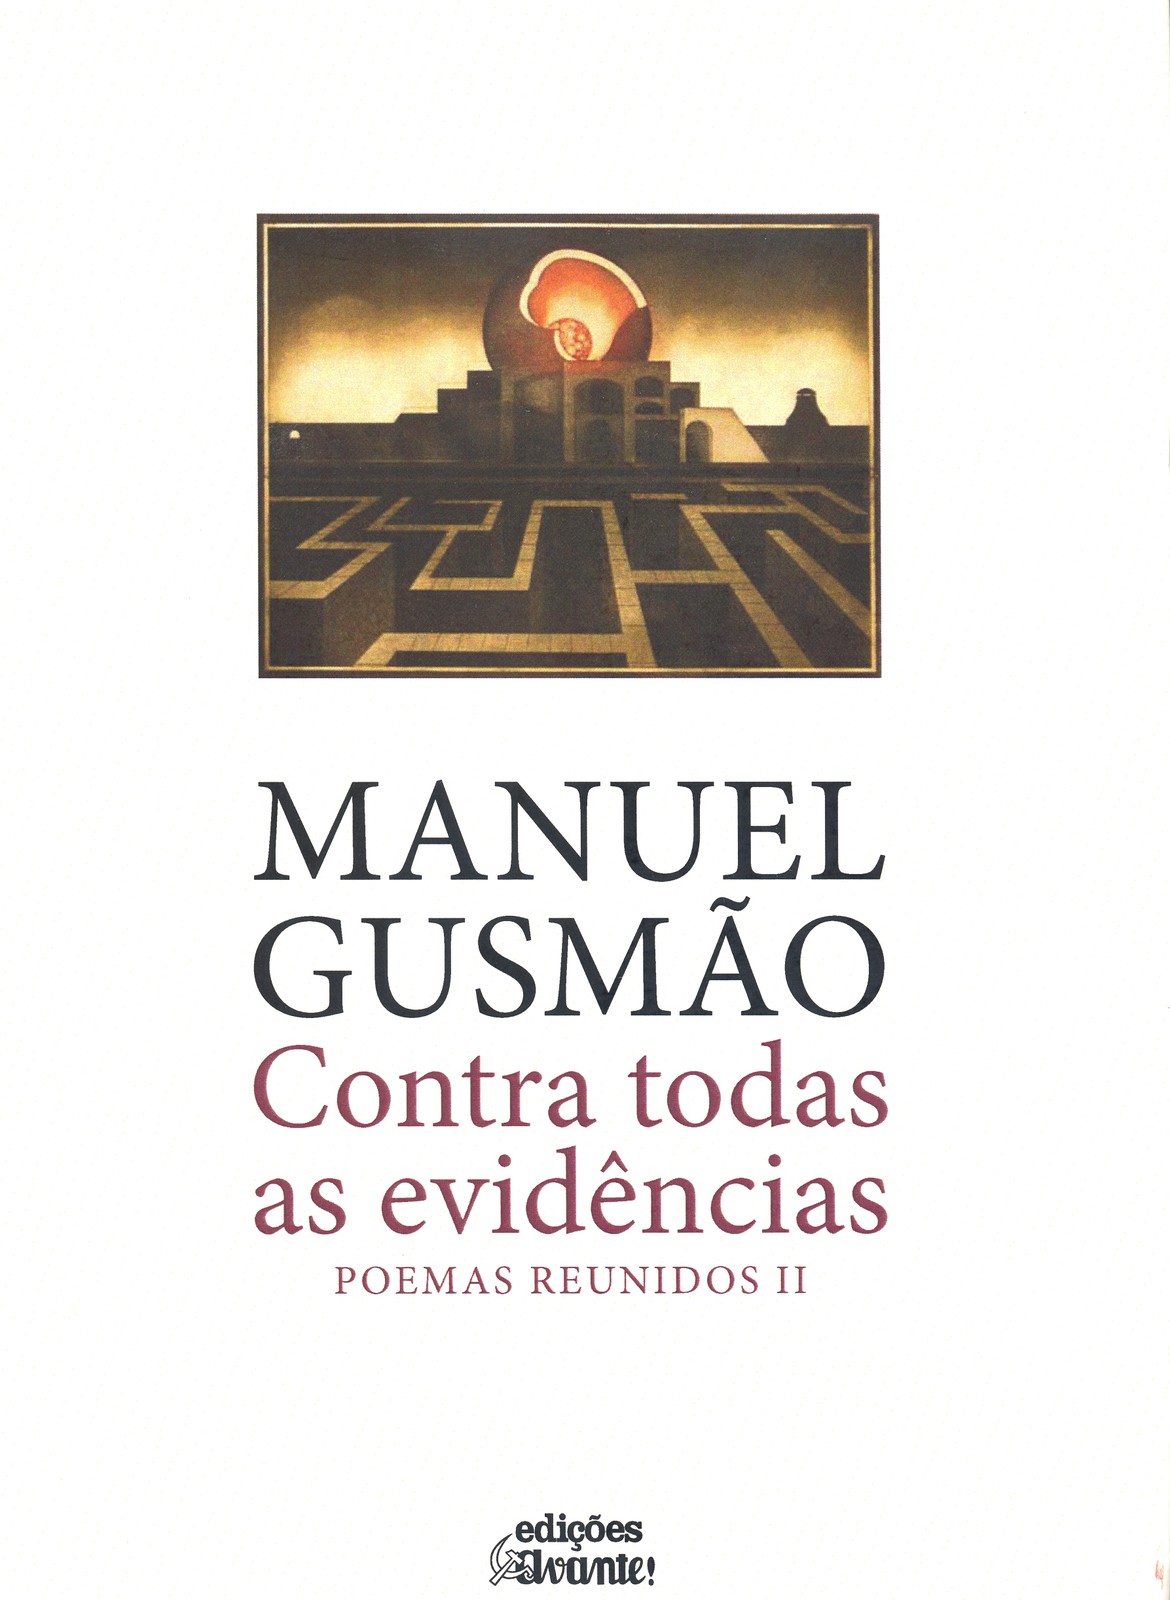 Manuel Gusmão - Contra Todas as Evidências, Poemas Reunidos II